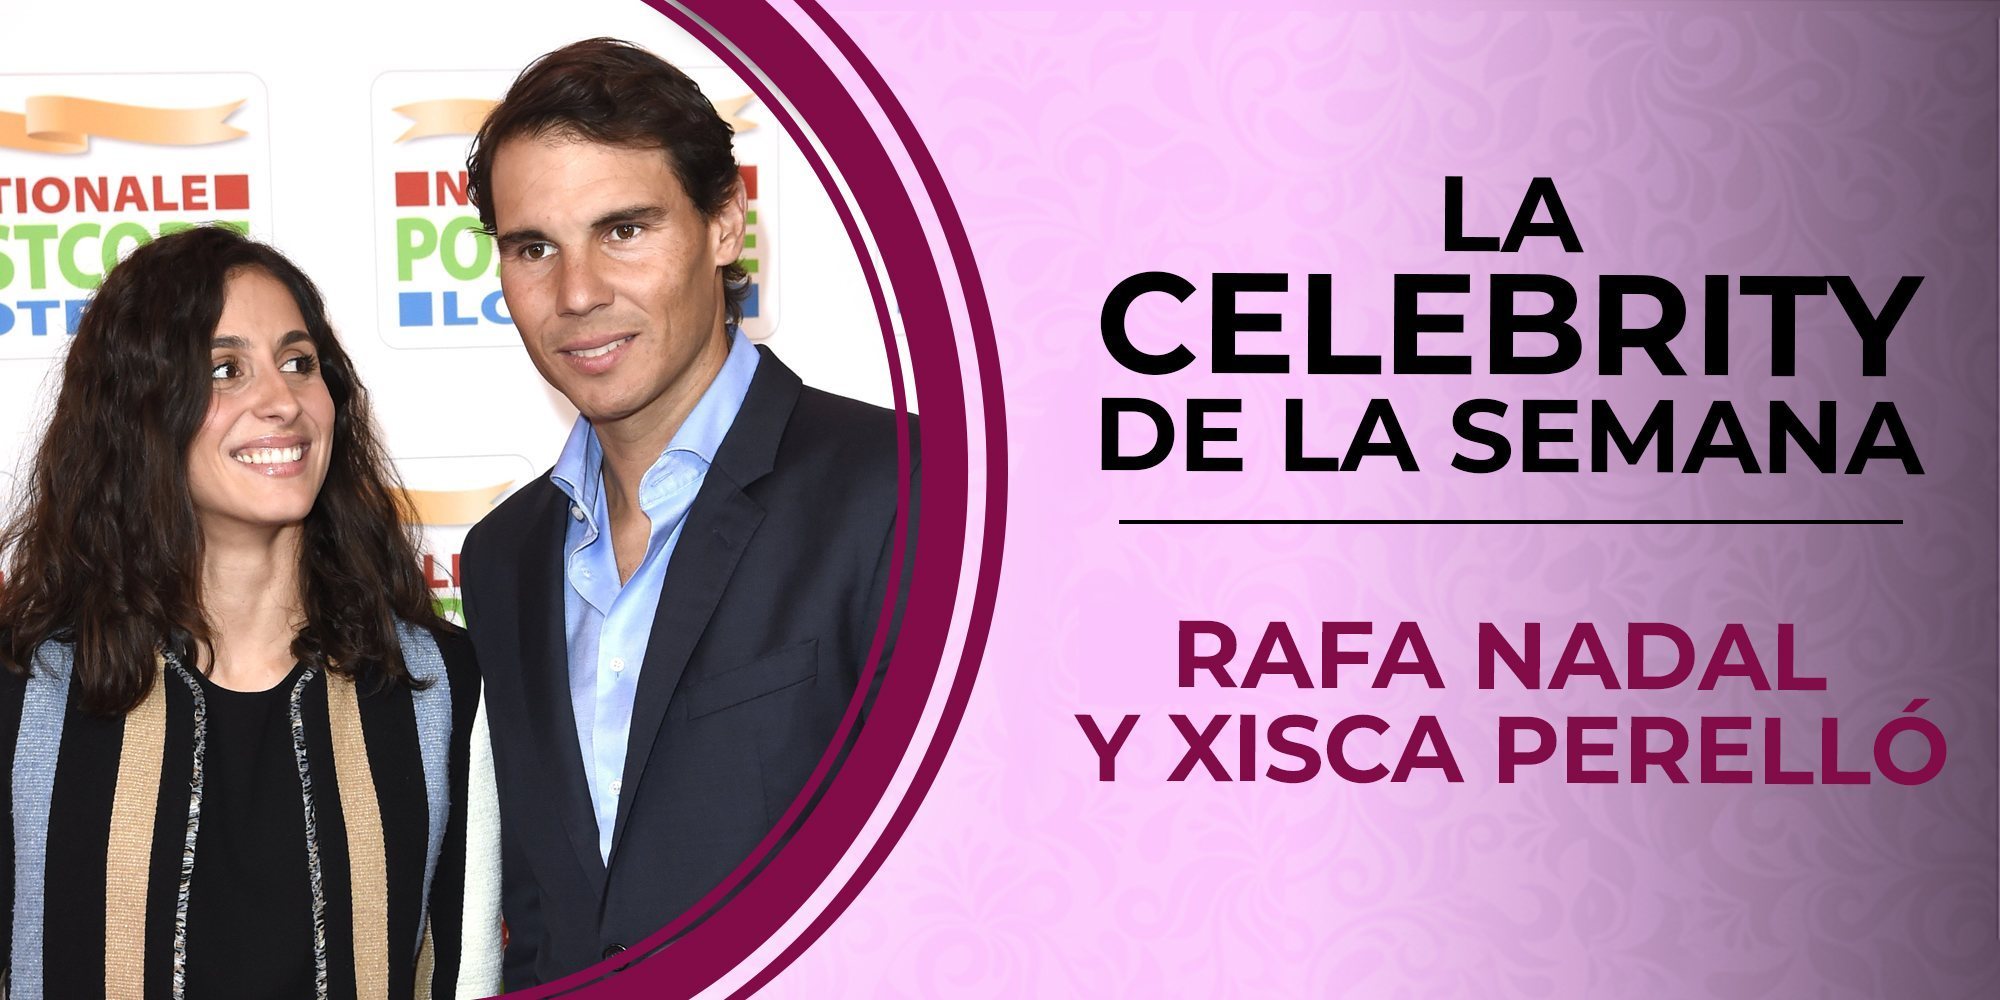 Rafa Nadal y Xisca Perelló, celebrities de la semana por su próxima boda